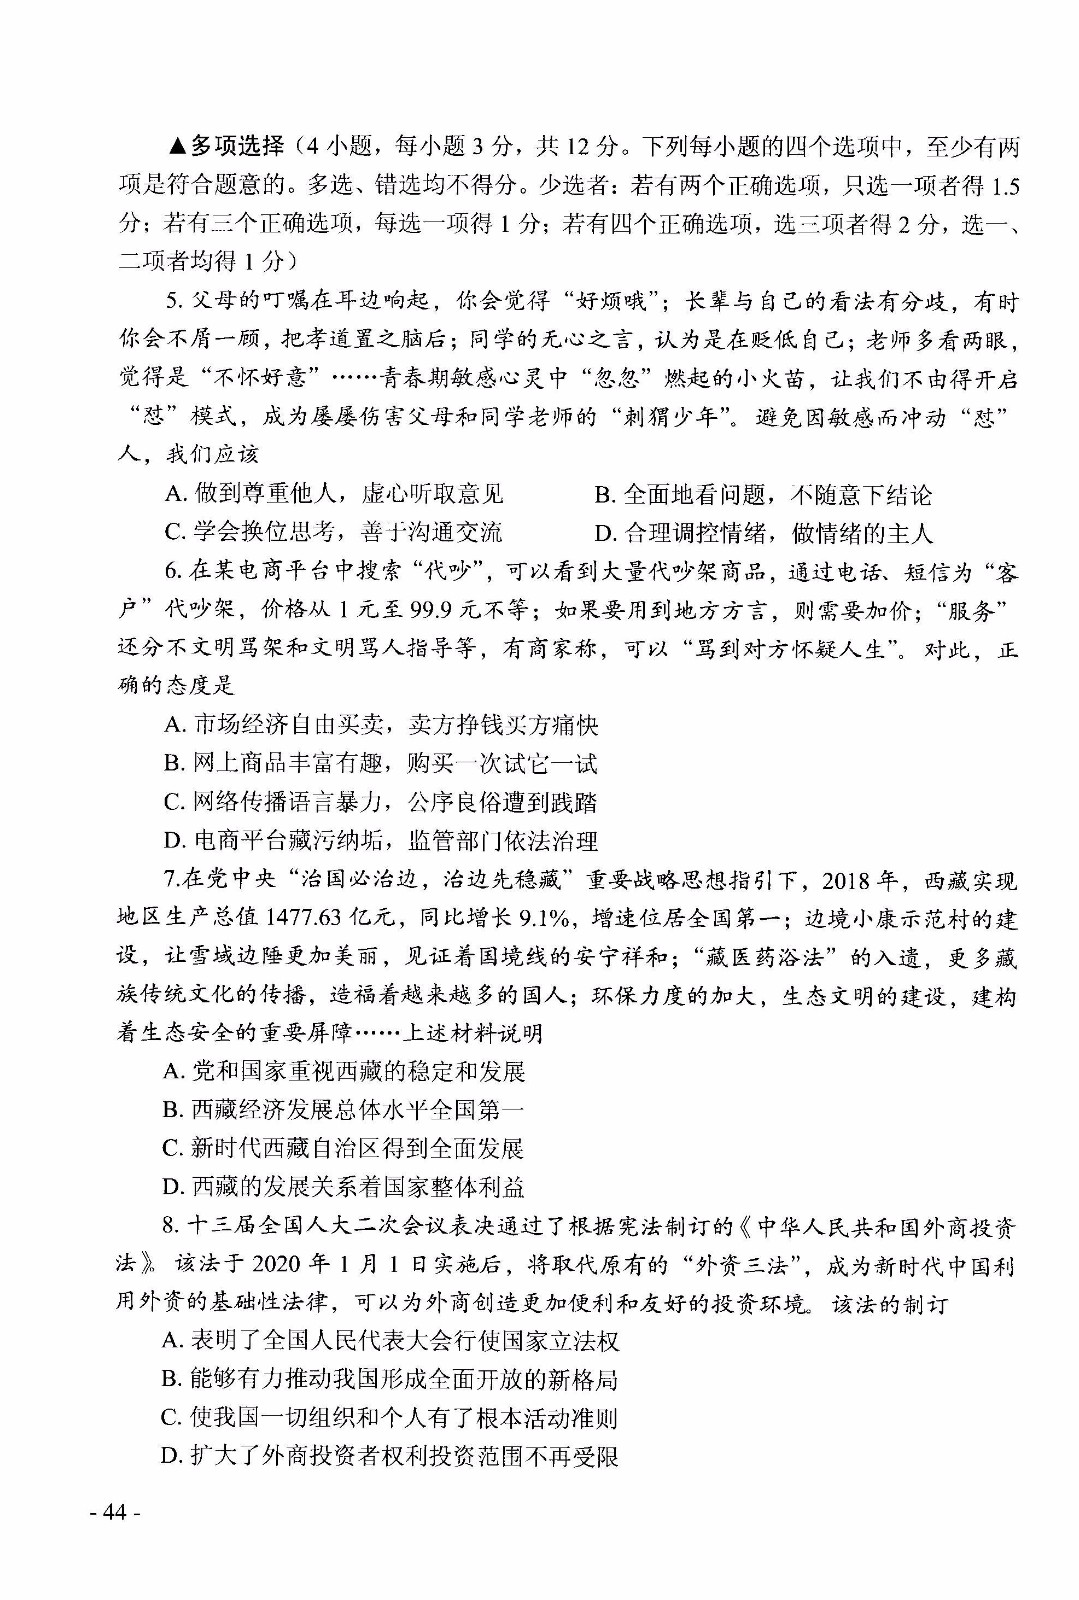 2019年河南中考《政治》真题及答案已公布